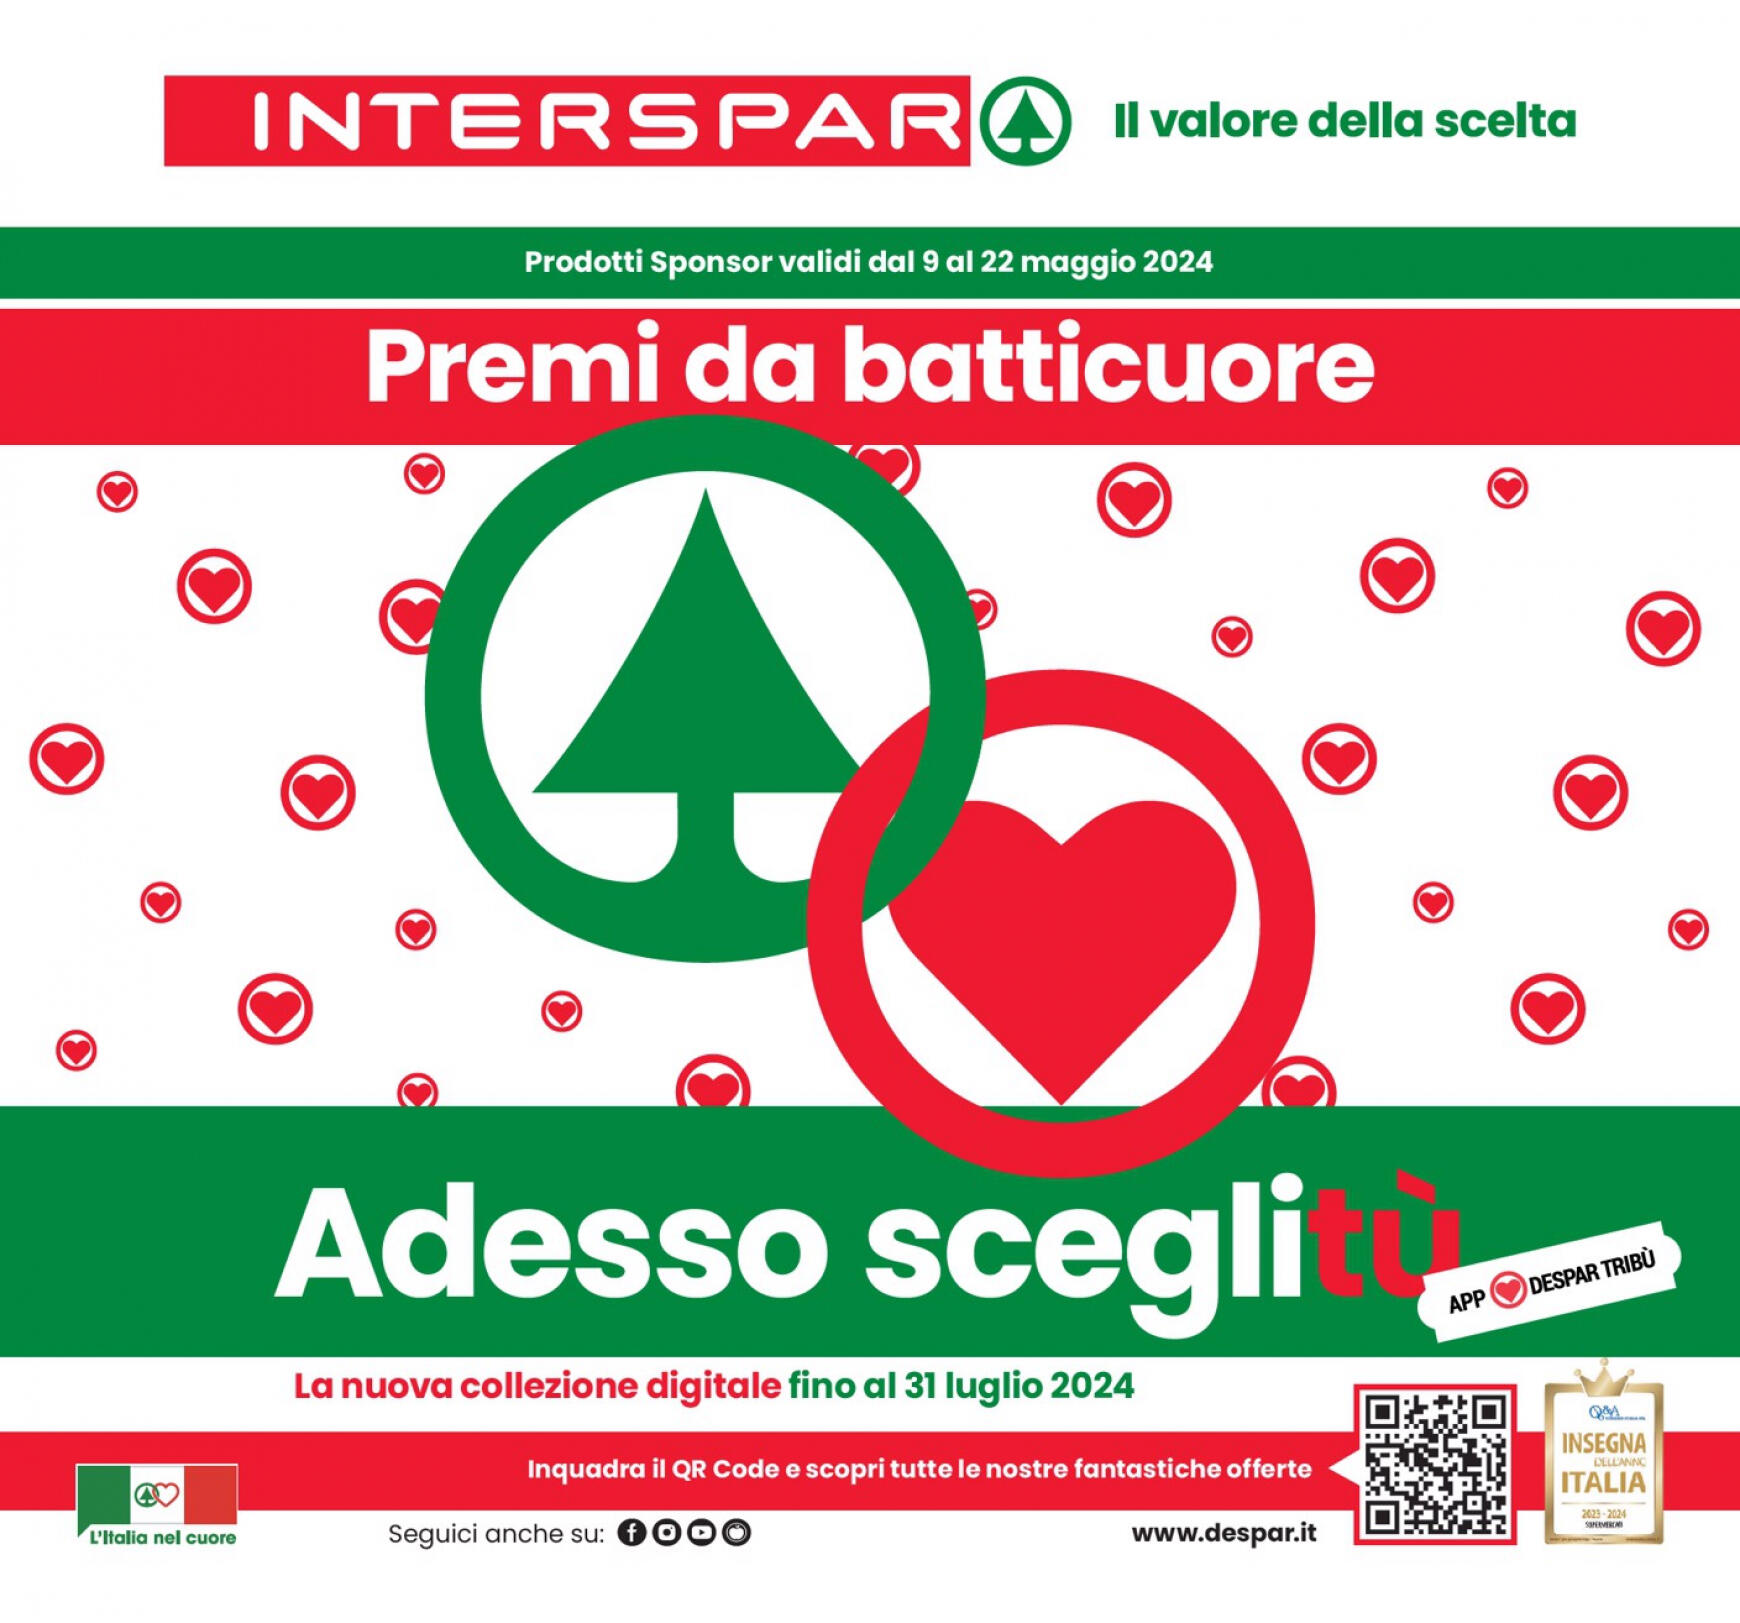 interspar - Nuovo volantino INTERSPAR - Premi da batticuore. Adesso sceglitù 09.05. - 22.05.